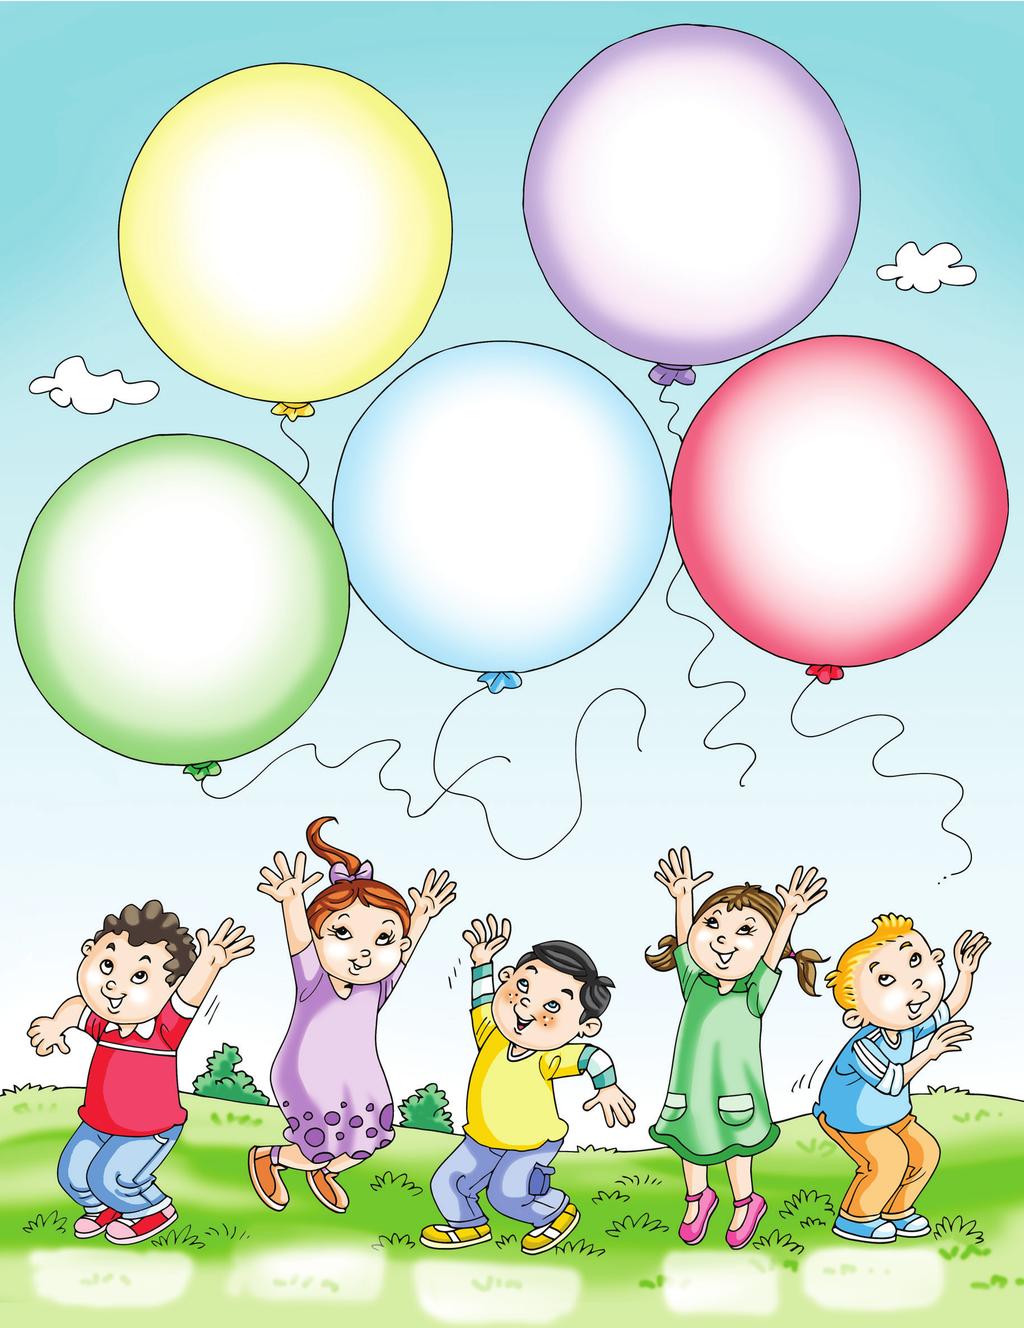 Duyu Organları ve Görevleri Etkinlik Can ve arkadaşları uçan balonlar ile oyun oynarken balonları ellerinden kaçırdılar.